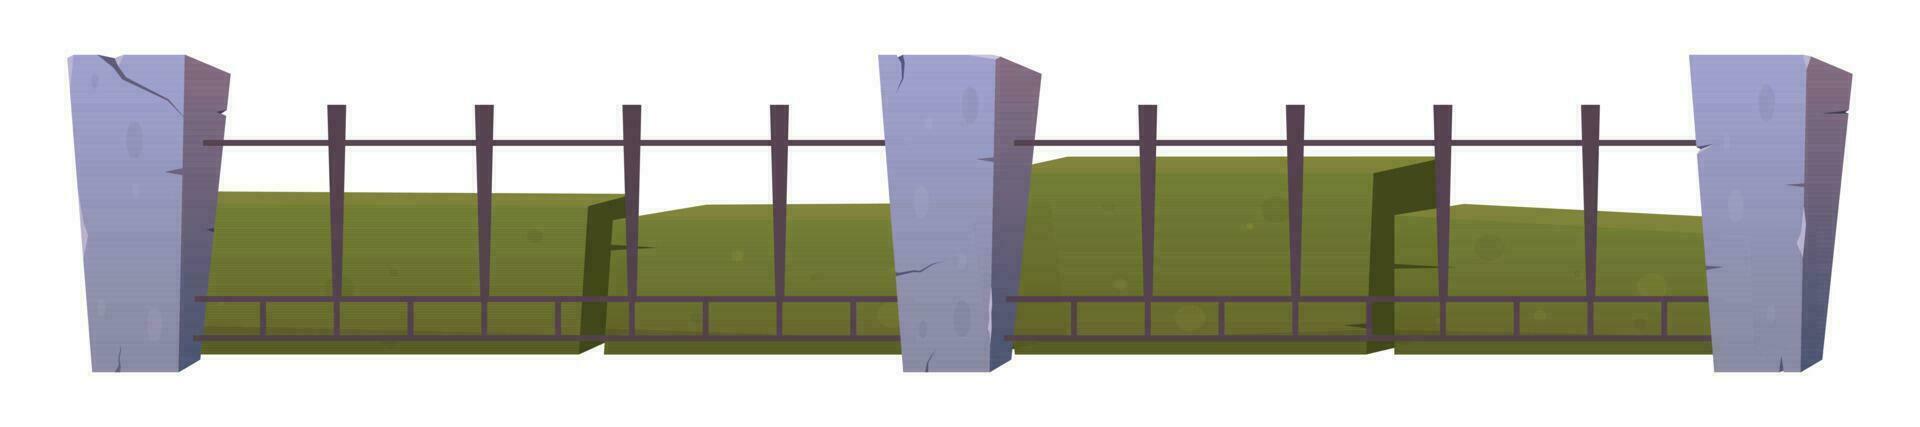 aço cerca com concreto Postagens dentro desenho animado estilo vetor